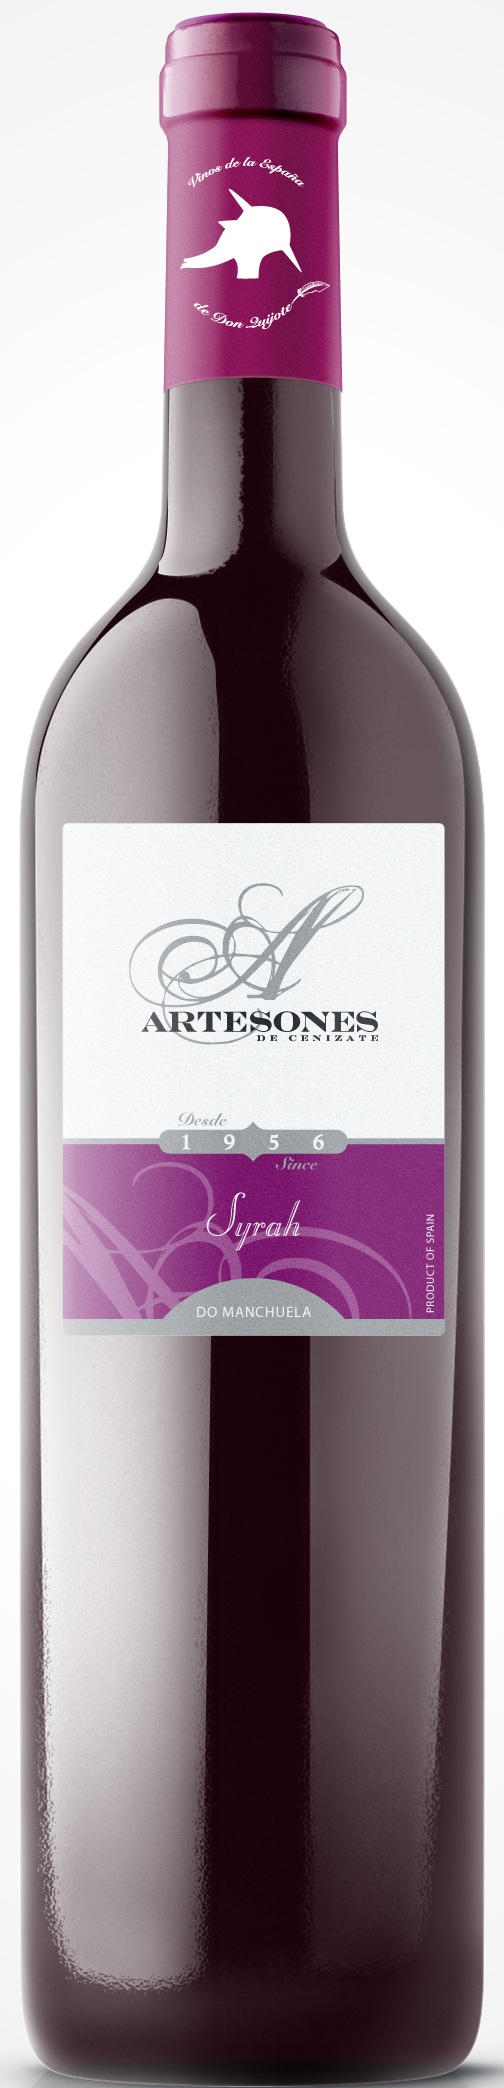 Logo del vino Artesones Syrah